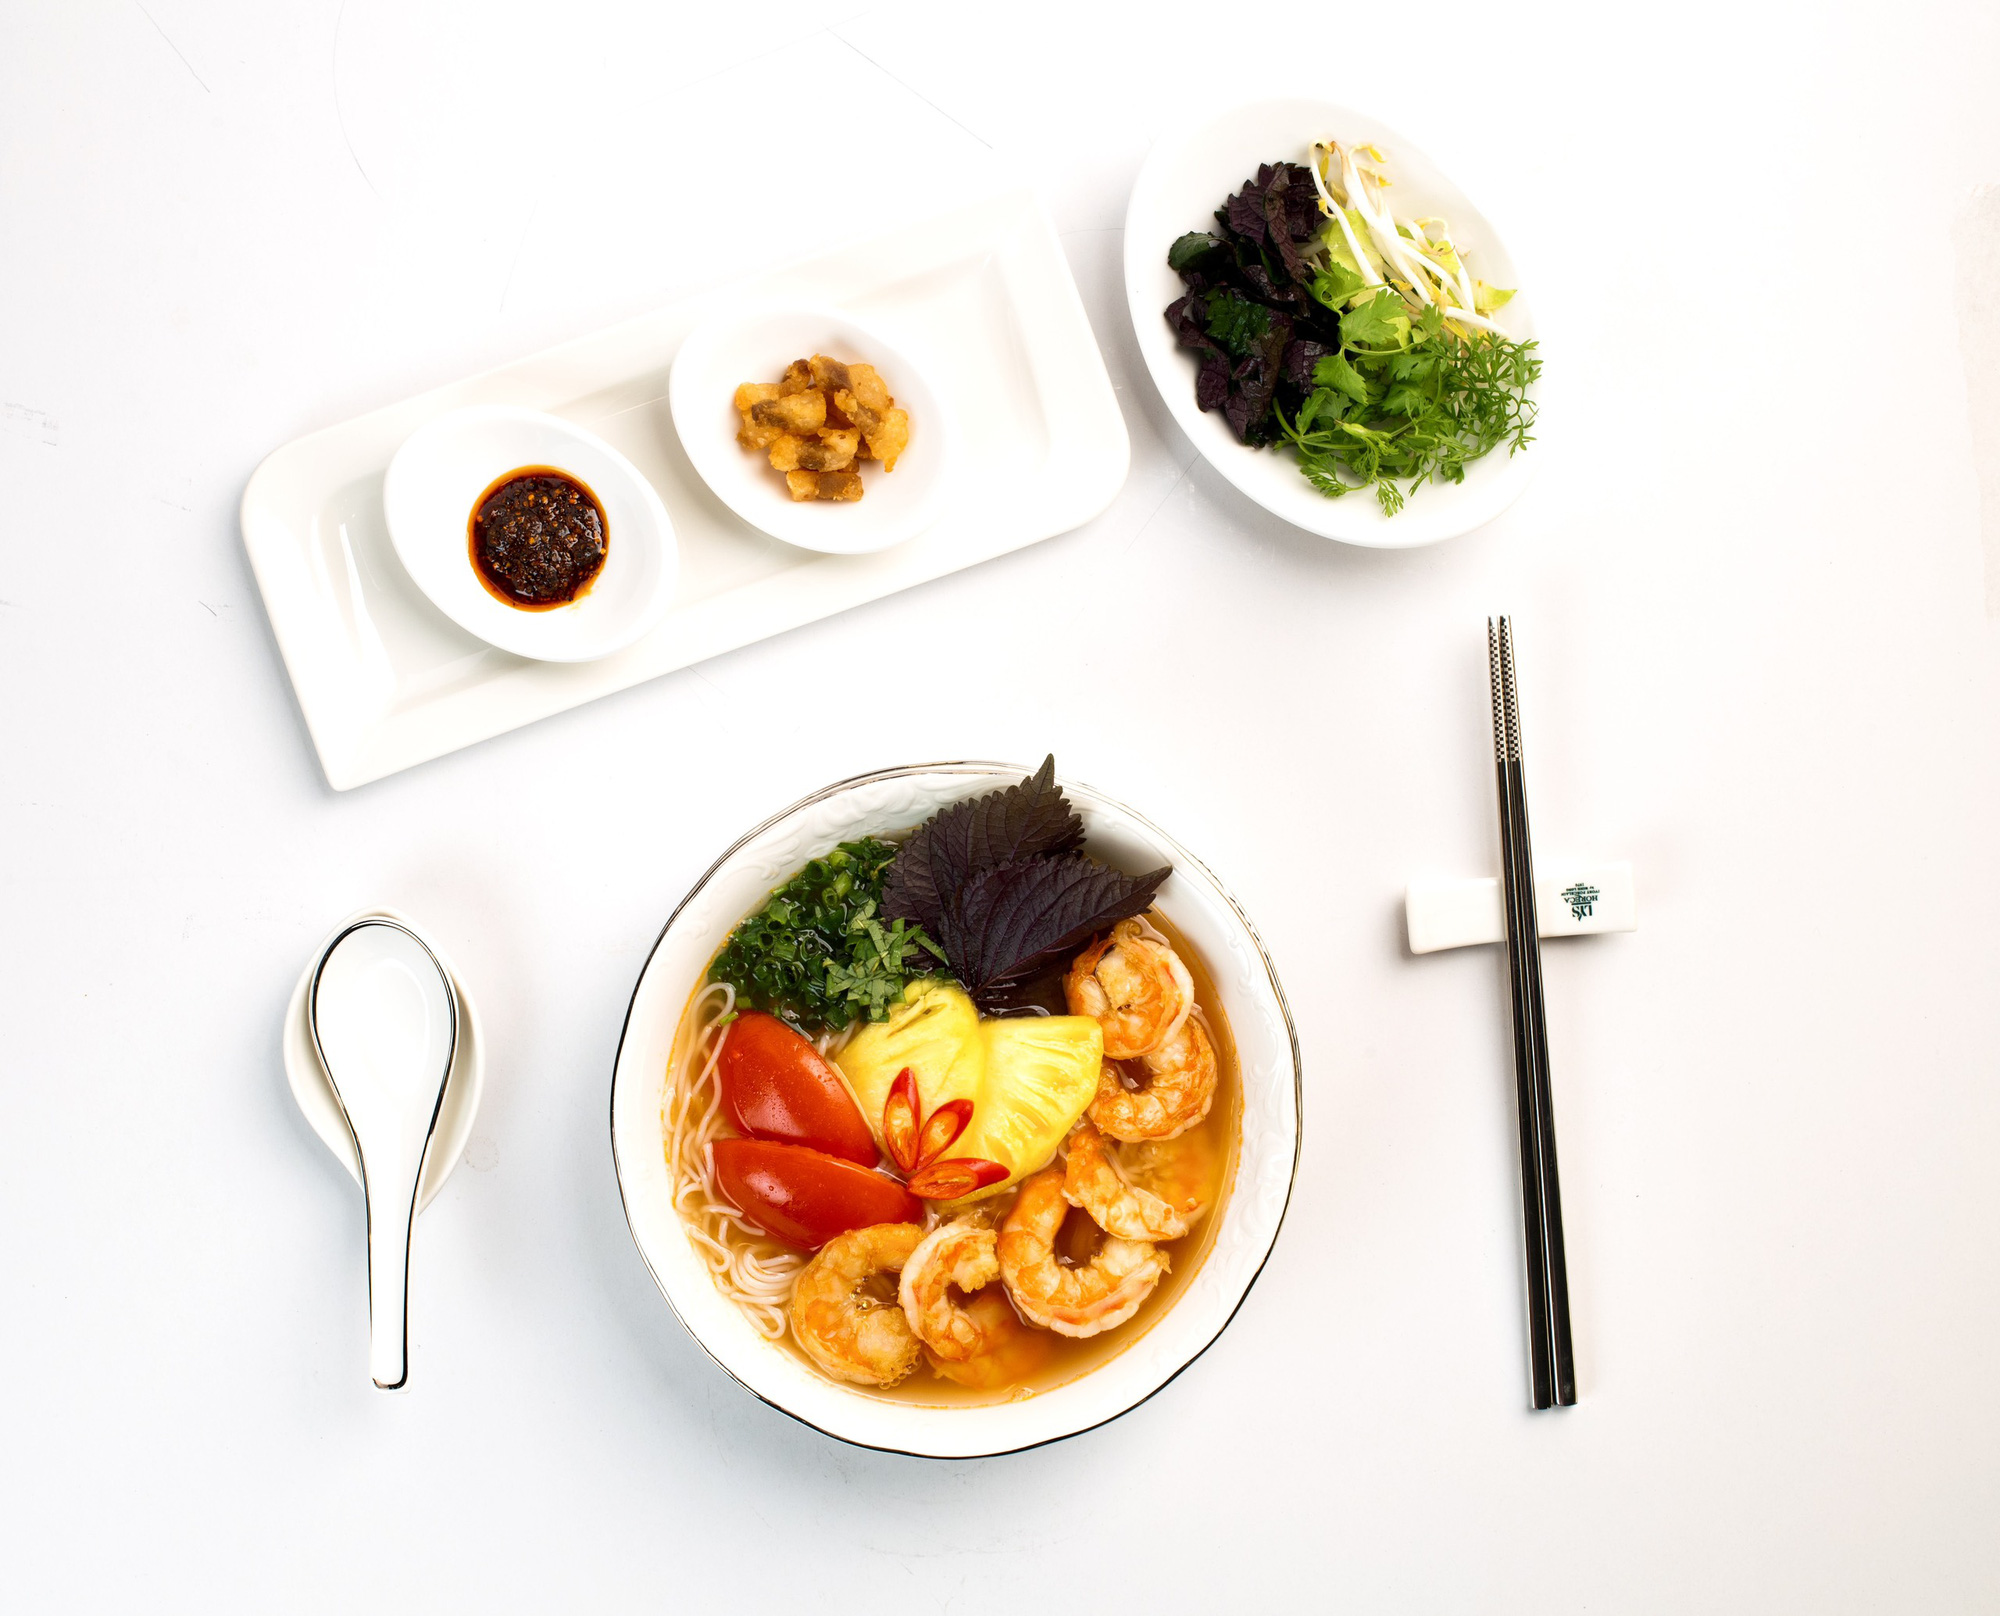 На прилагаемой фотографии показана тарелка «bún tôm» (суп из креветок и вермишели), произведенный QP Foods.